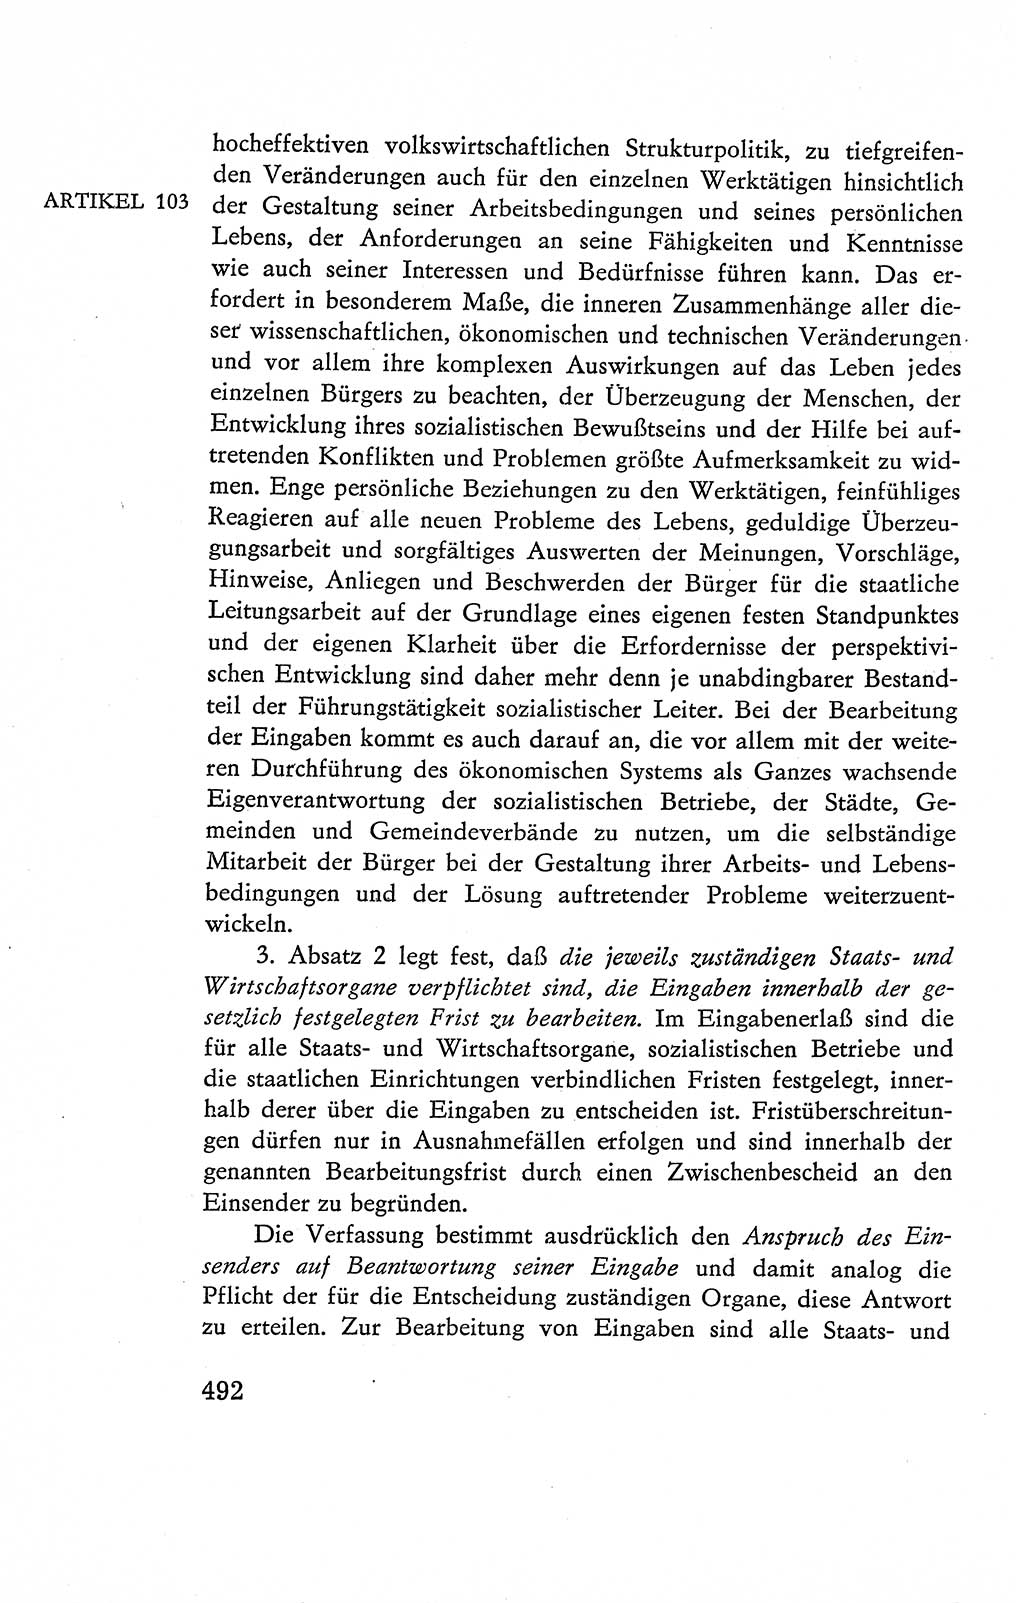 Verfassung der Deutschen Demokratischen Republik (DDR), Dokumente, Kommentar 1969, Band 2, Seite 492 (Verf. DDR Dok. Komm. 1969, Bd. 2, S. 492)